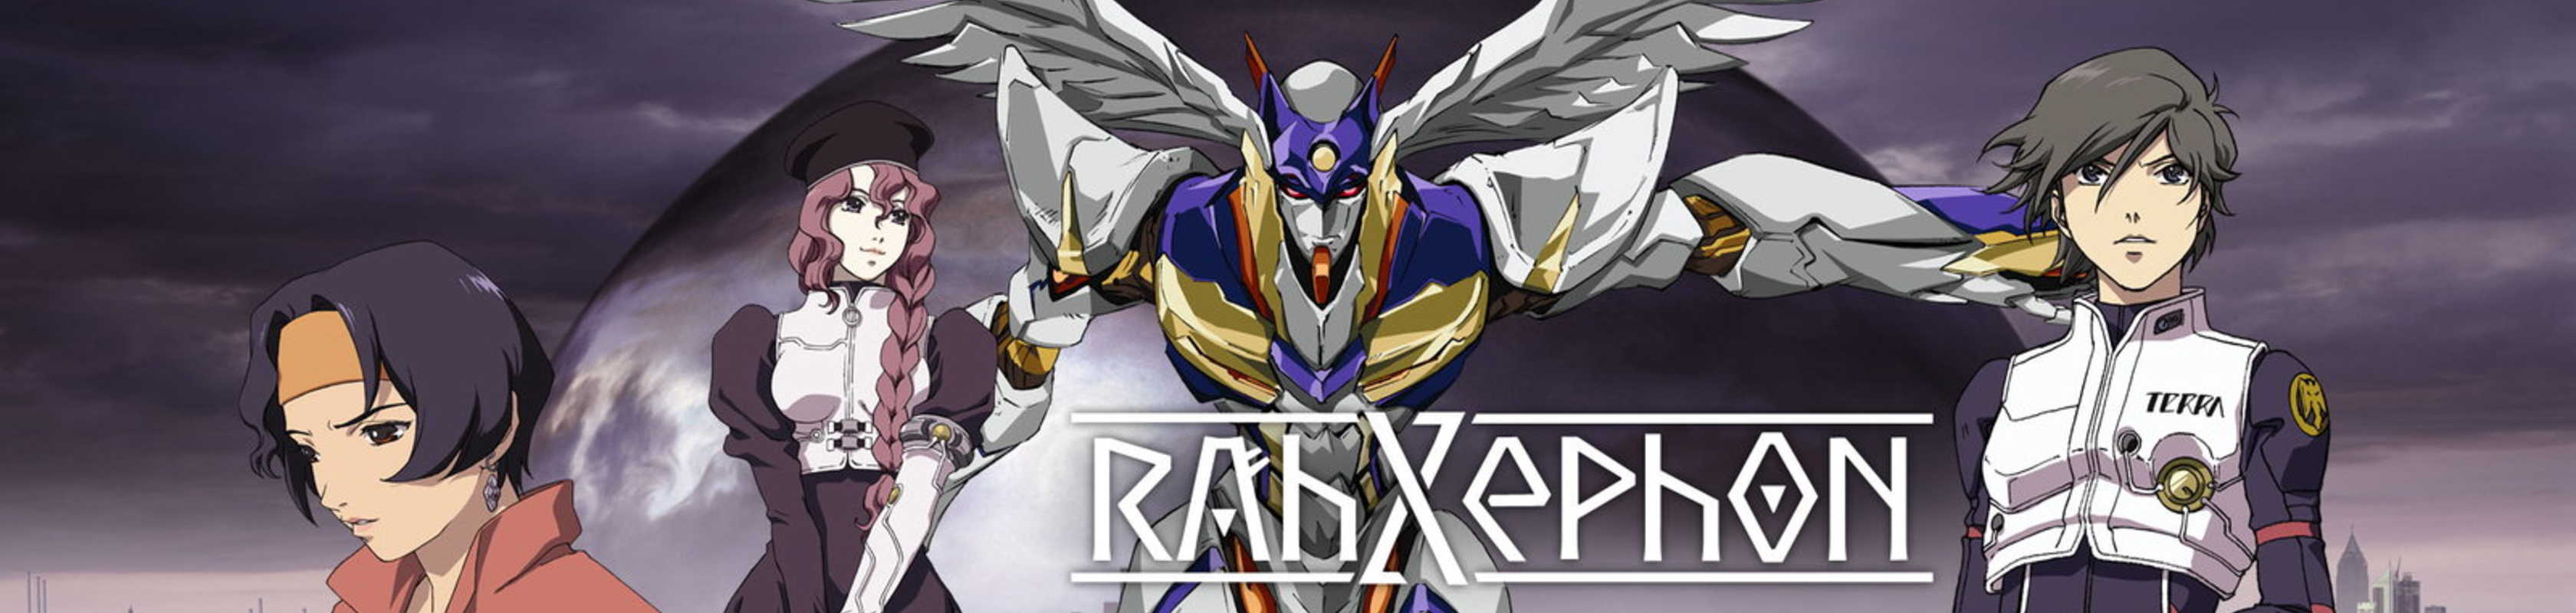 RahXephon cover